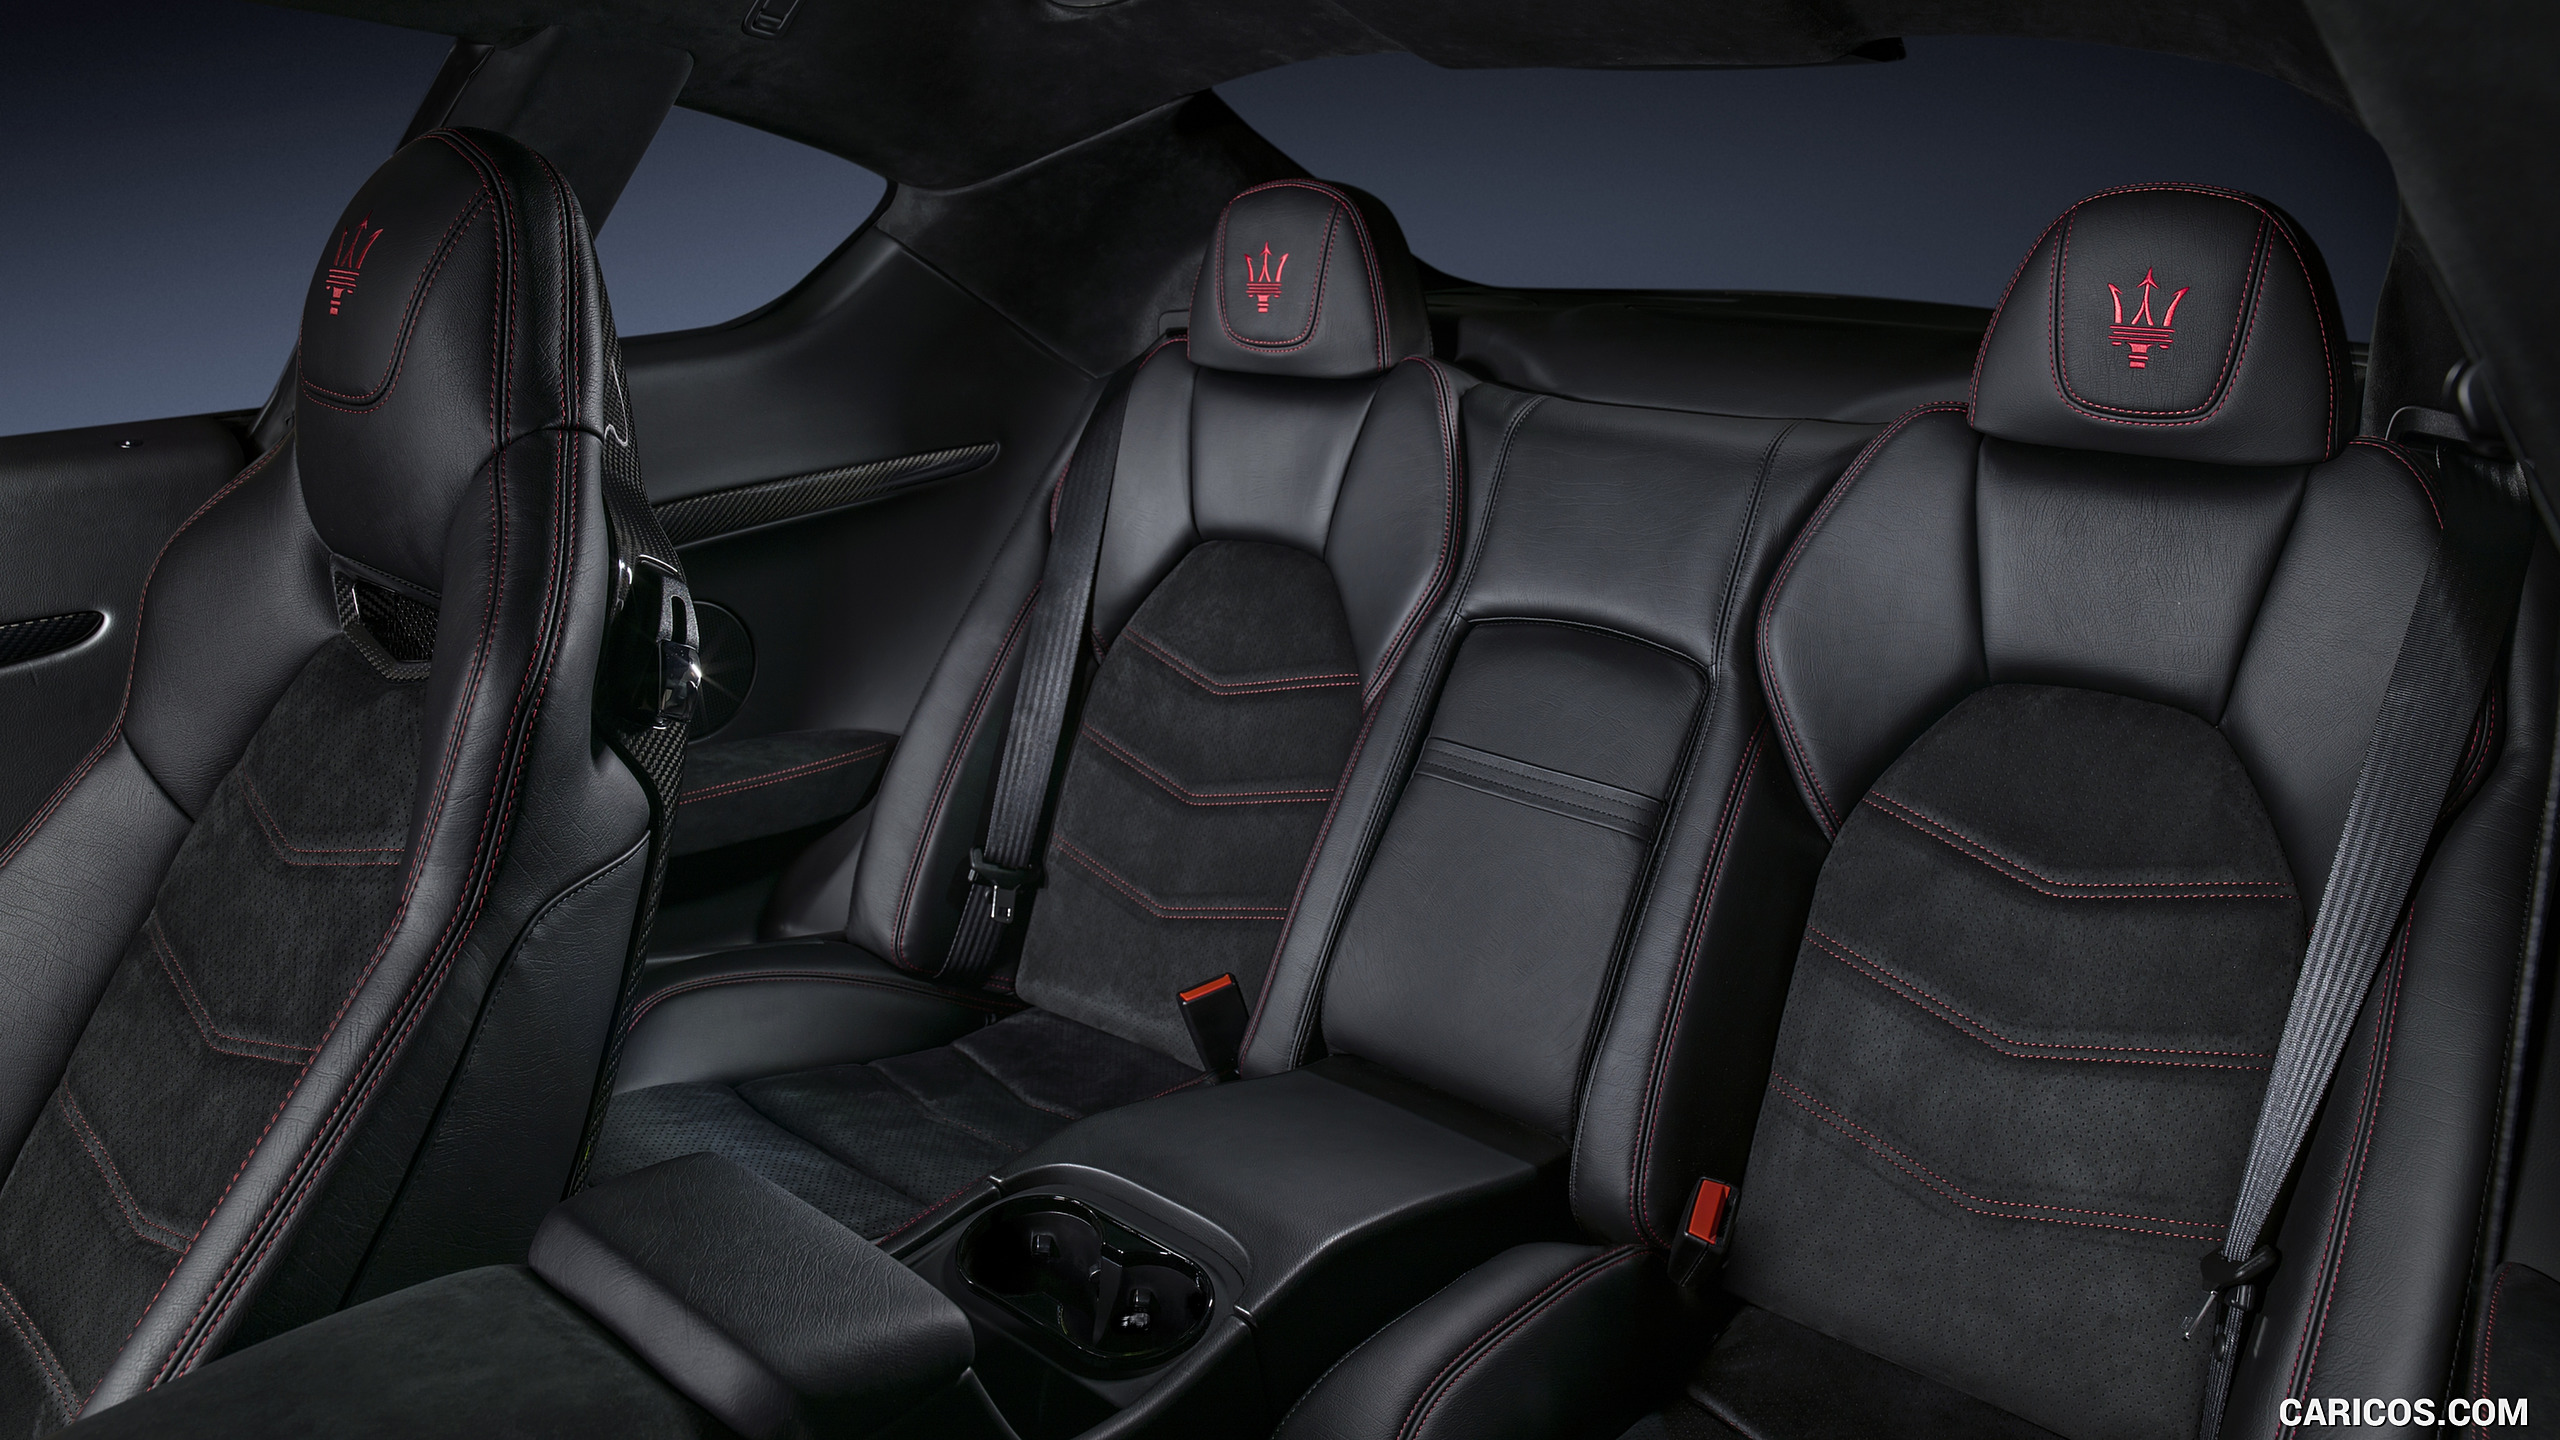 2018 Maserati GranTurismo MC Sport Line - Interior, Rear Seats, #22 of 22